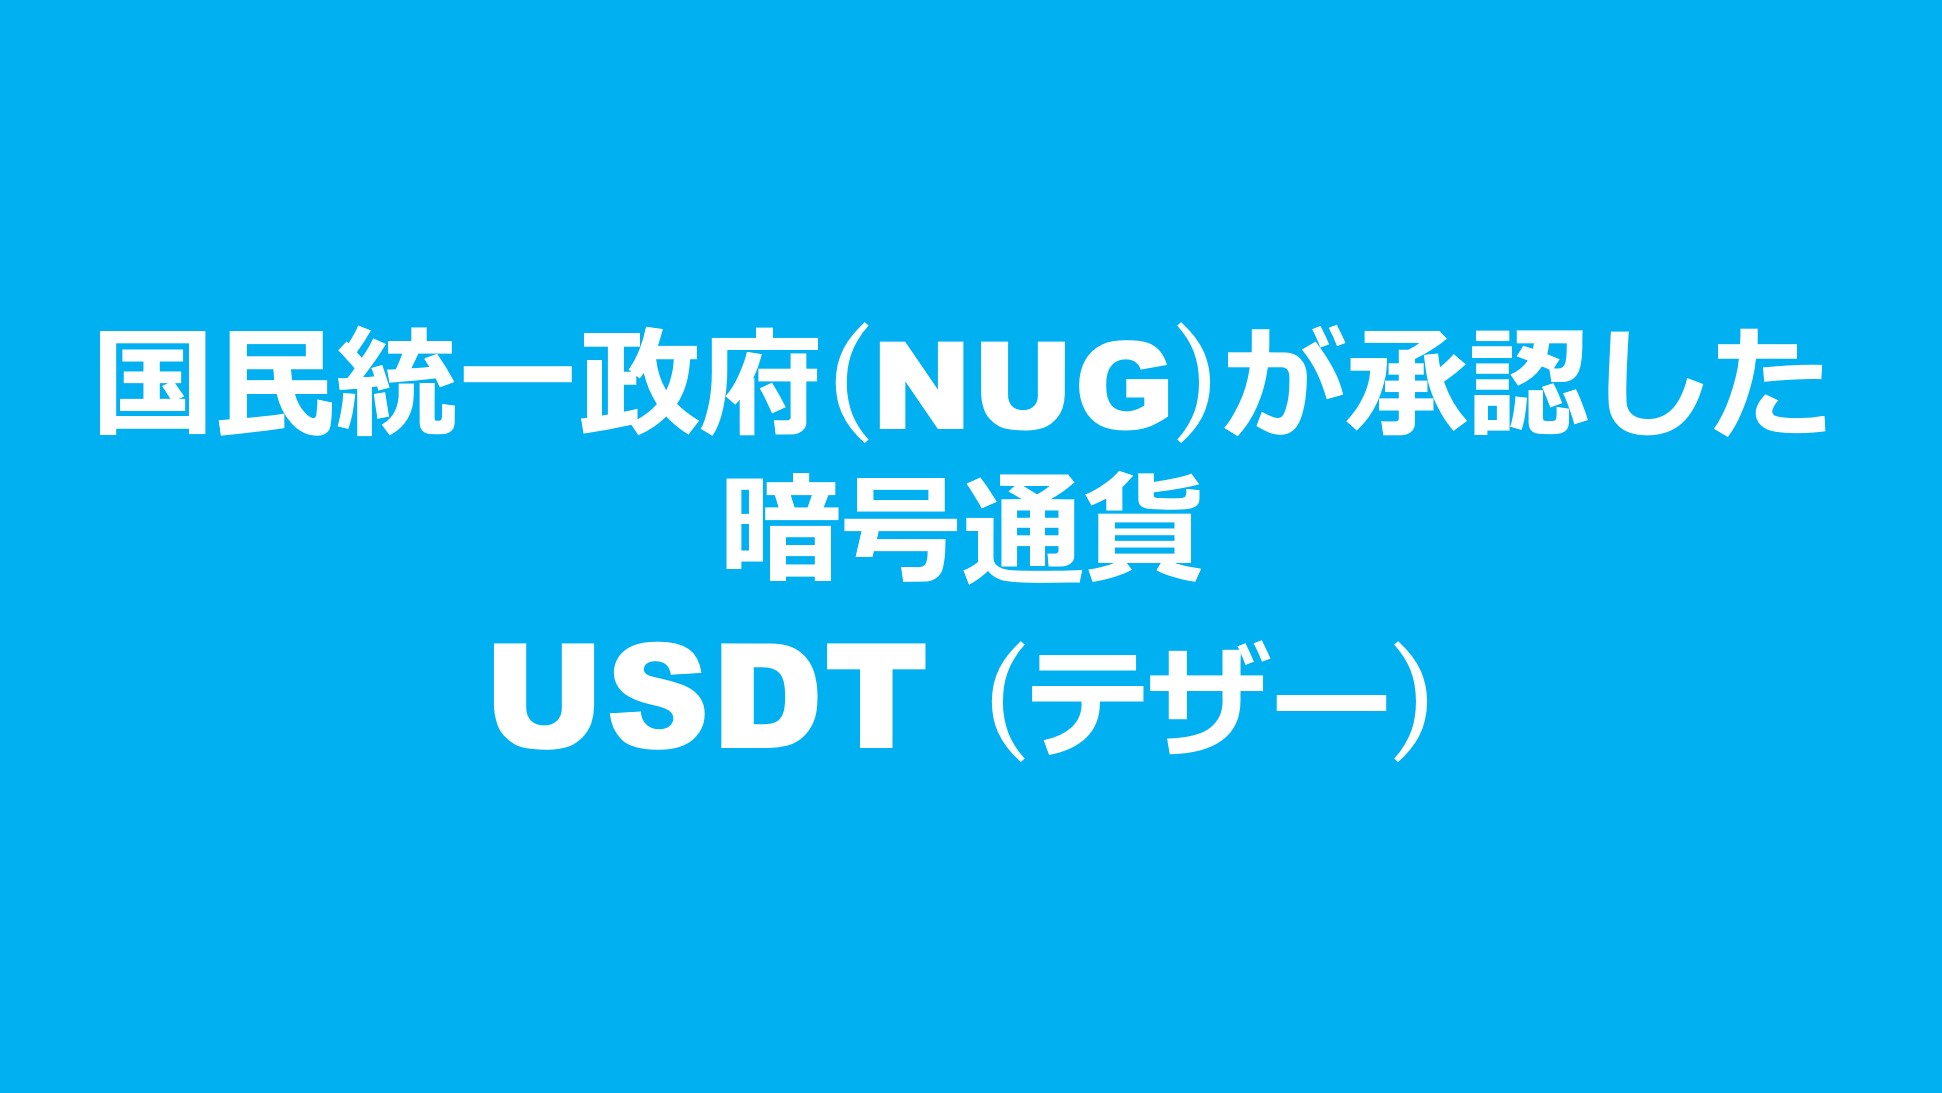 国民統一政府 (NUG) が承認した暗号通貨「USDT (テザー)」